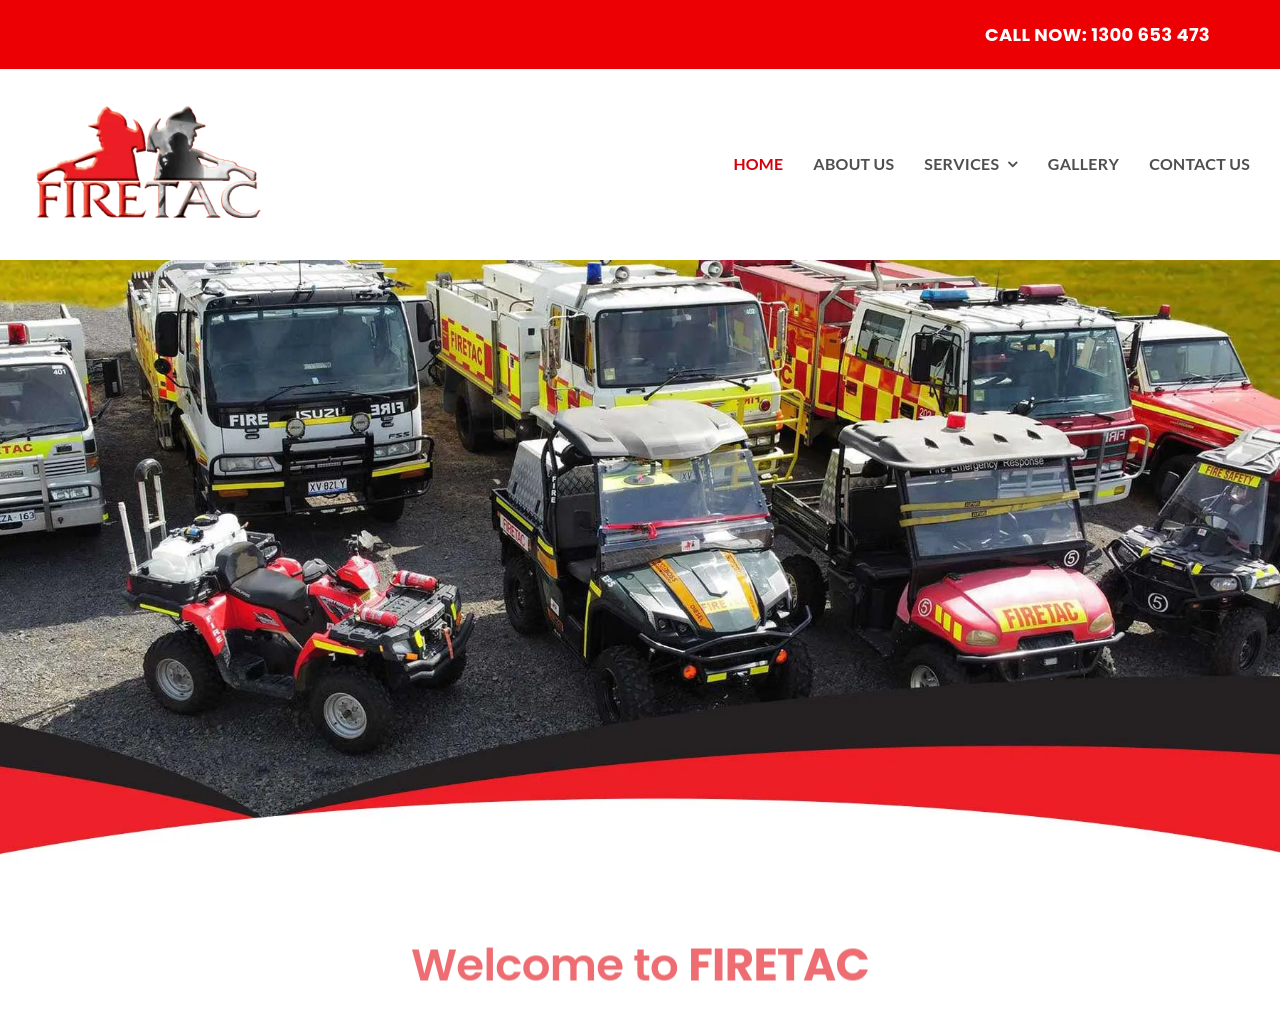 firetac.com.au